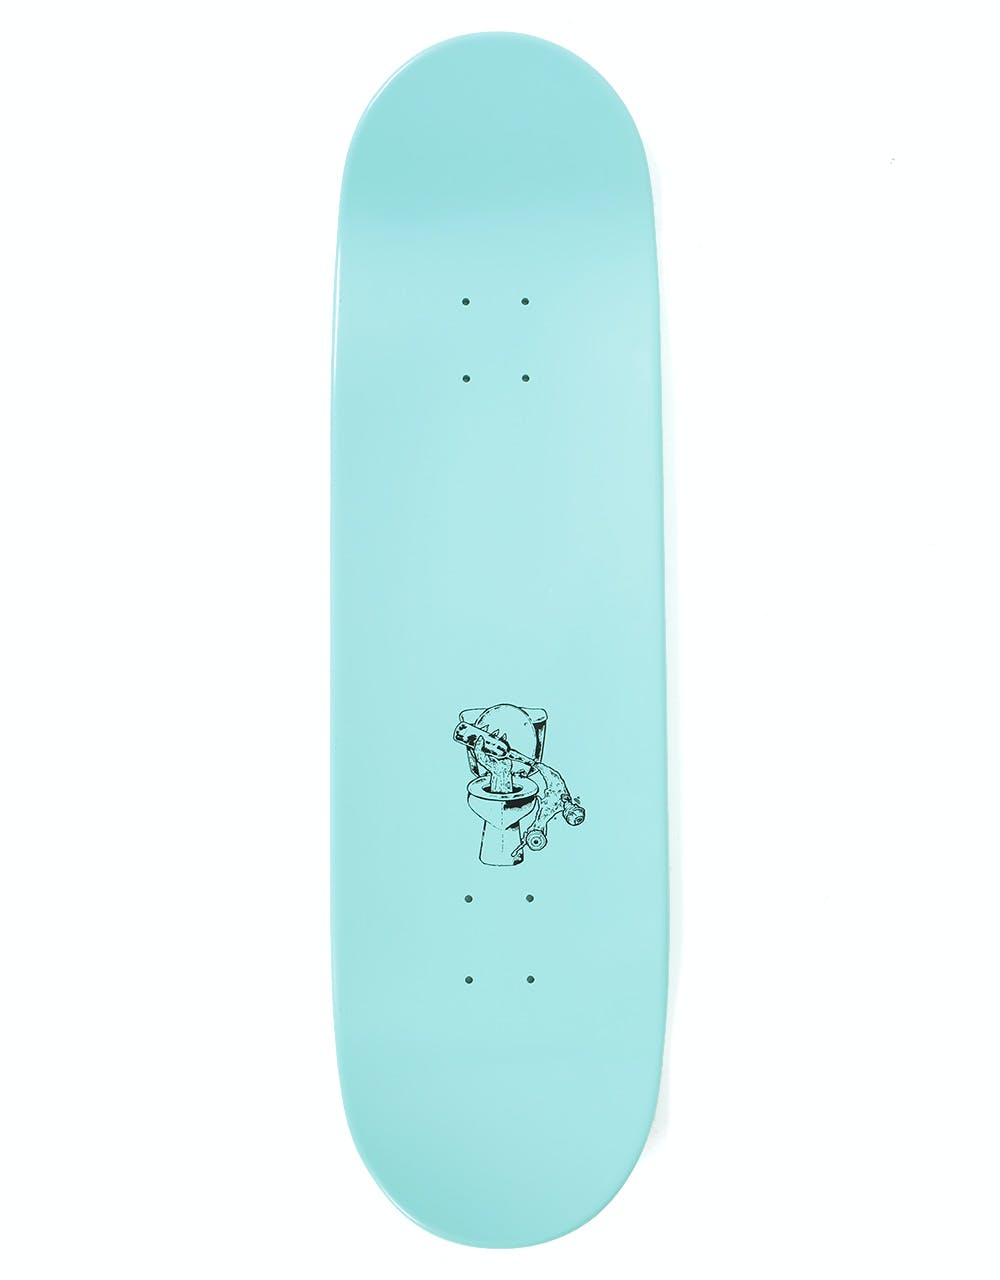 Lovenskate x French 'R.Mutt' Skateboard Deck - 8.8"